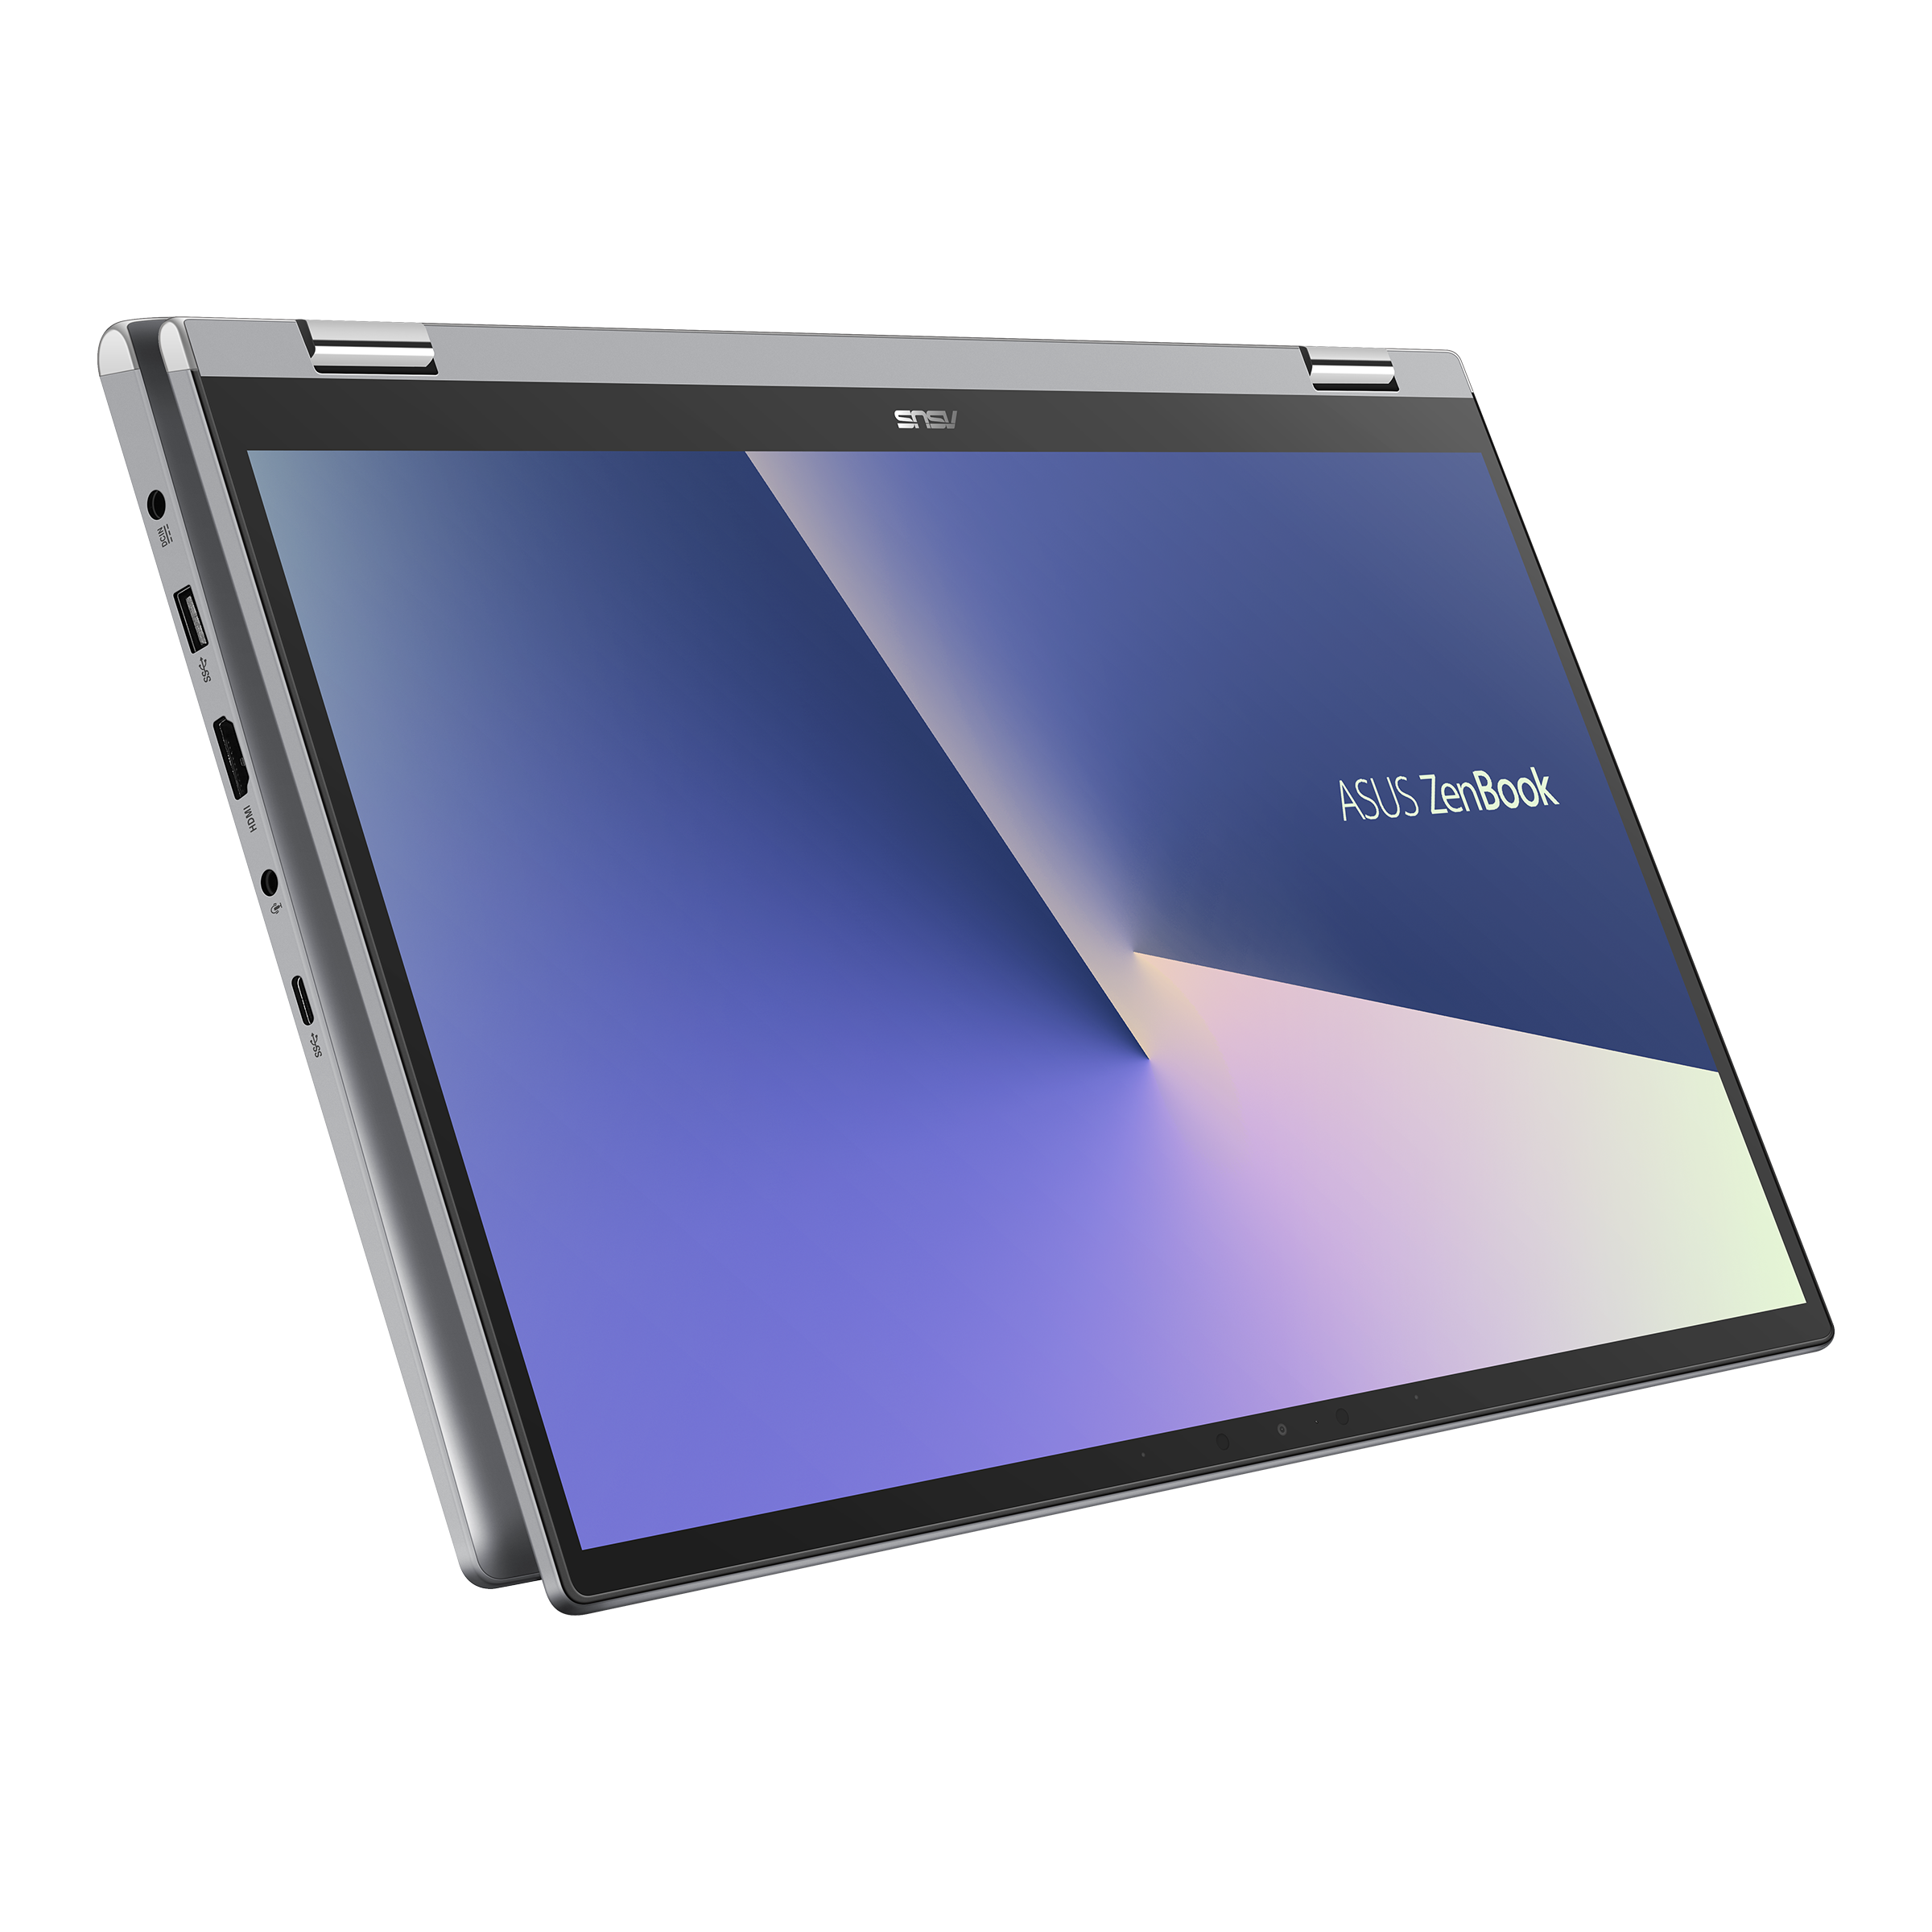 Zenbook Flip 15 UX564｜Laptops For Home｜ASUS Switzerland